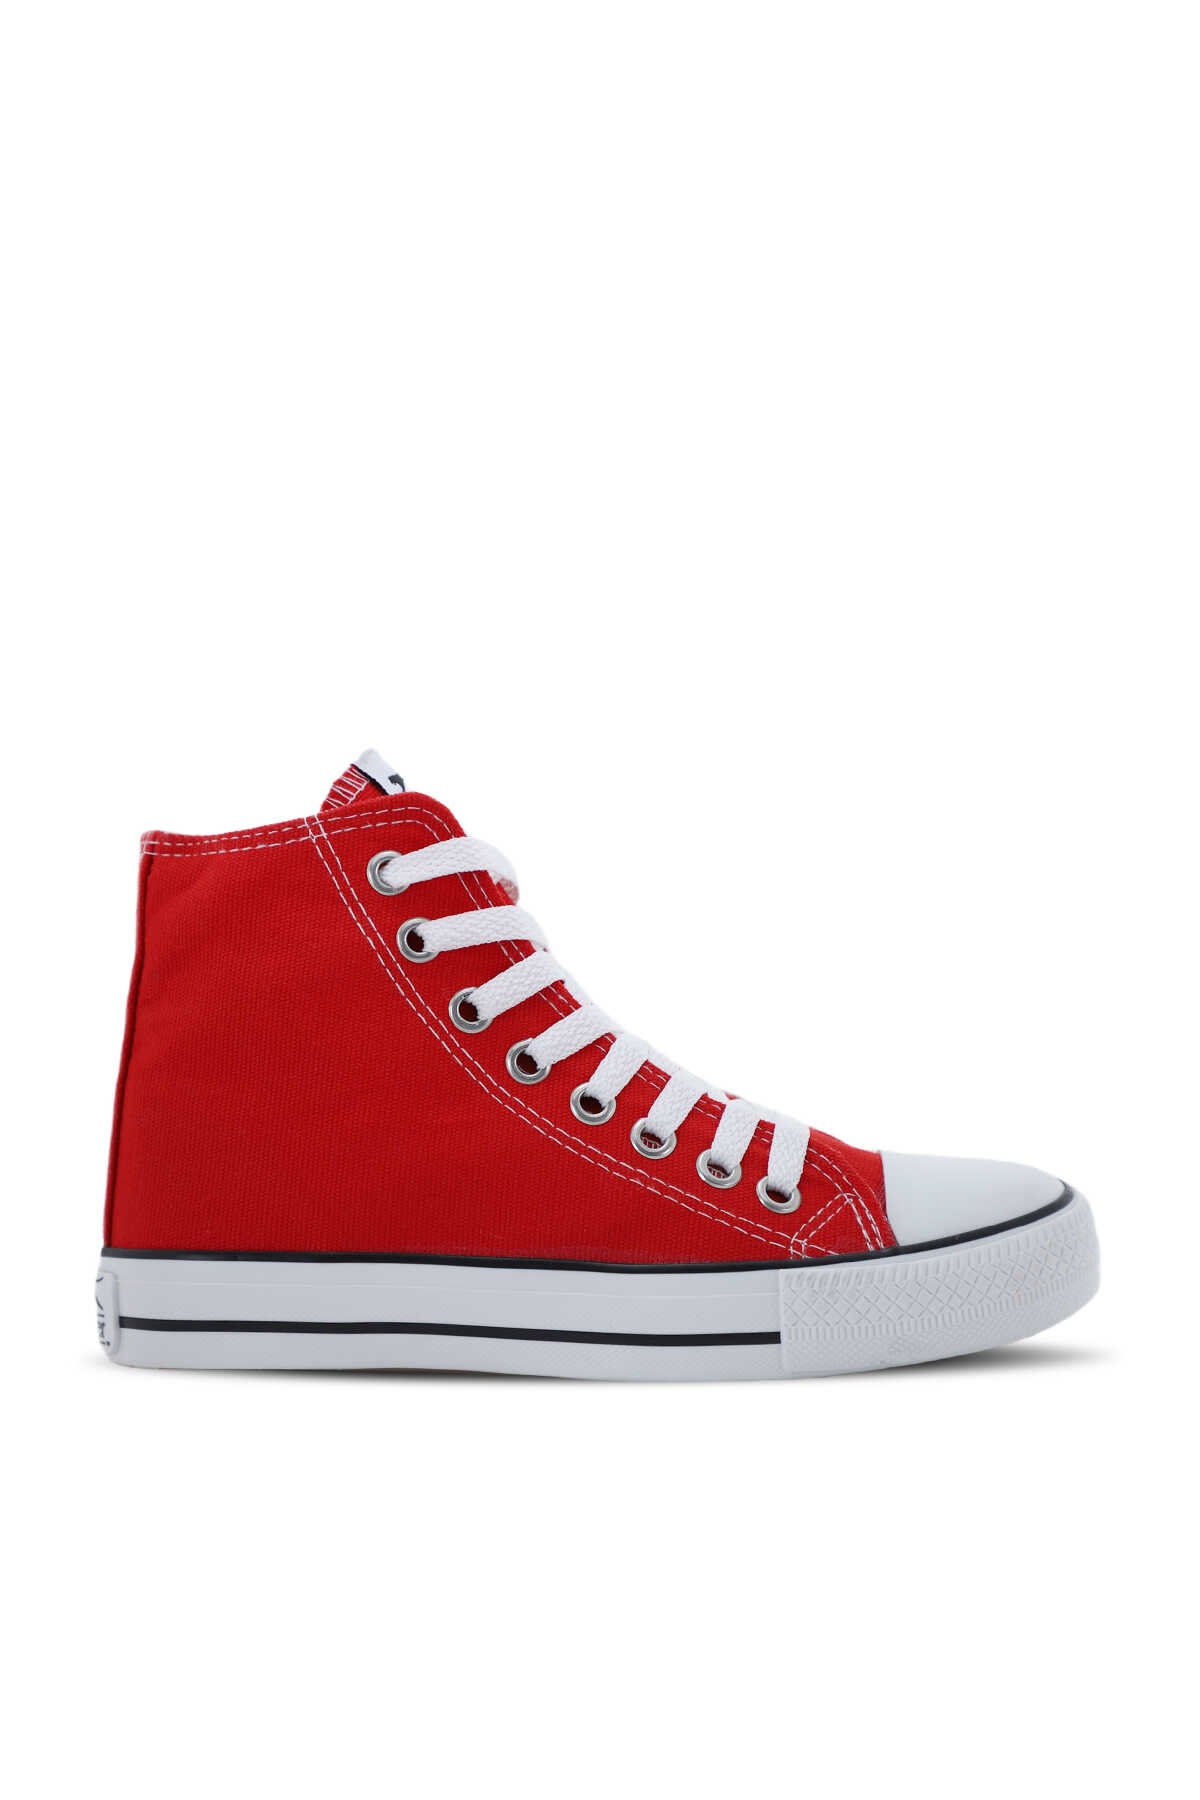 Slazenger - Slazenger SCHOOL Sneaker Kadın Ayakkabı Kırmızı